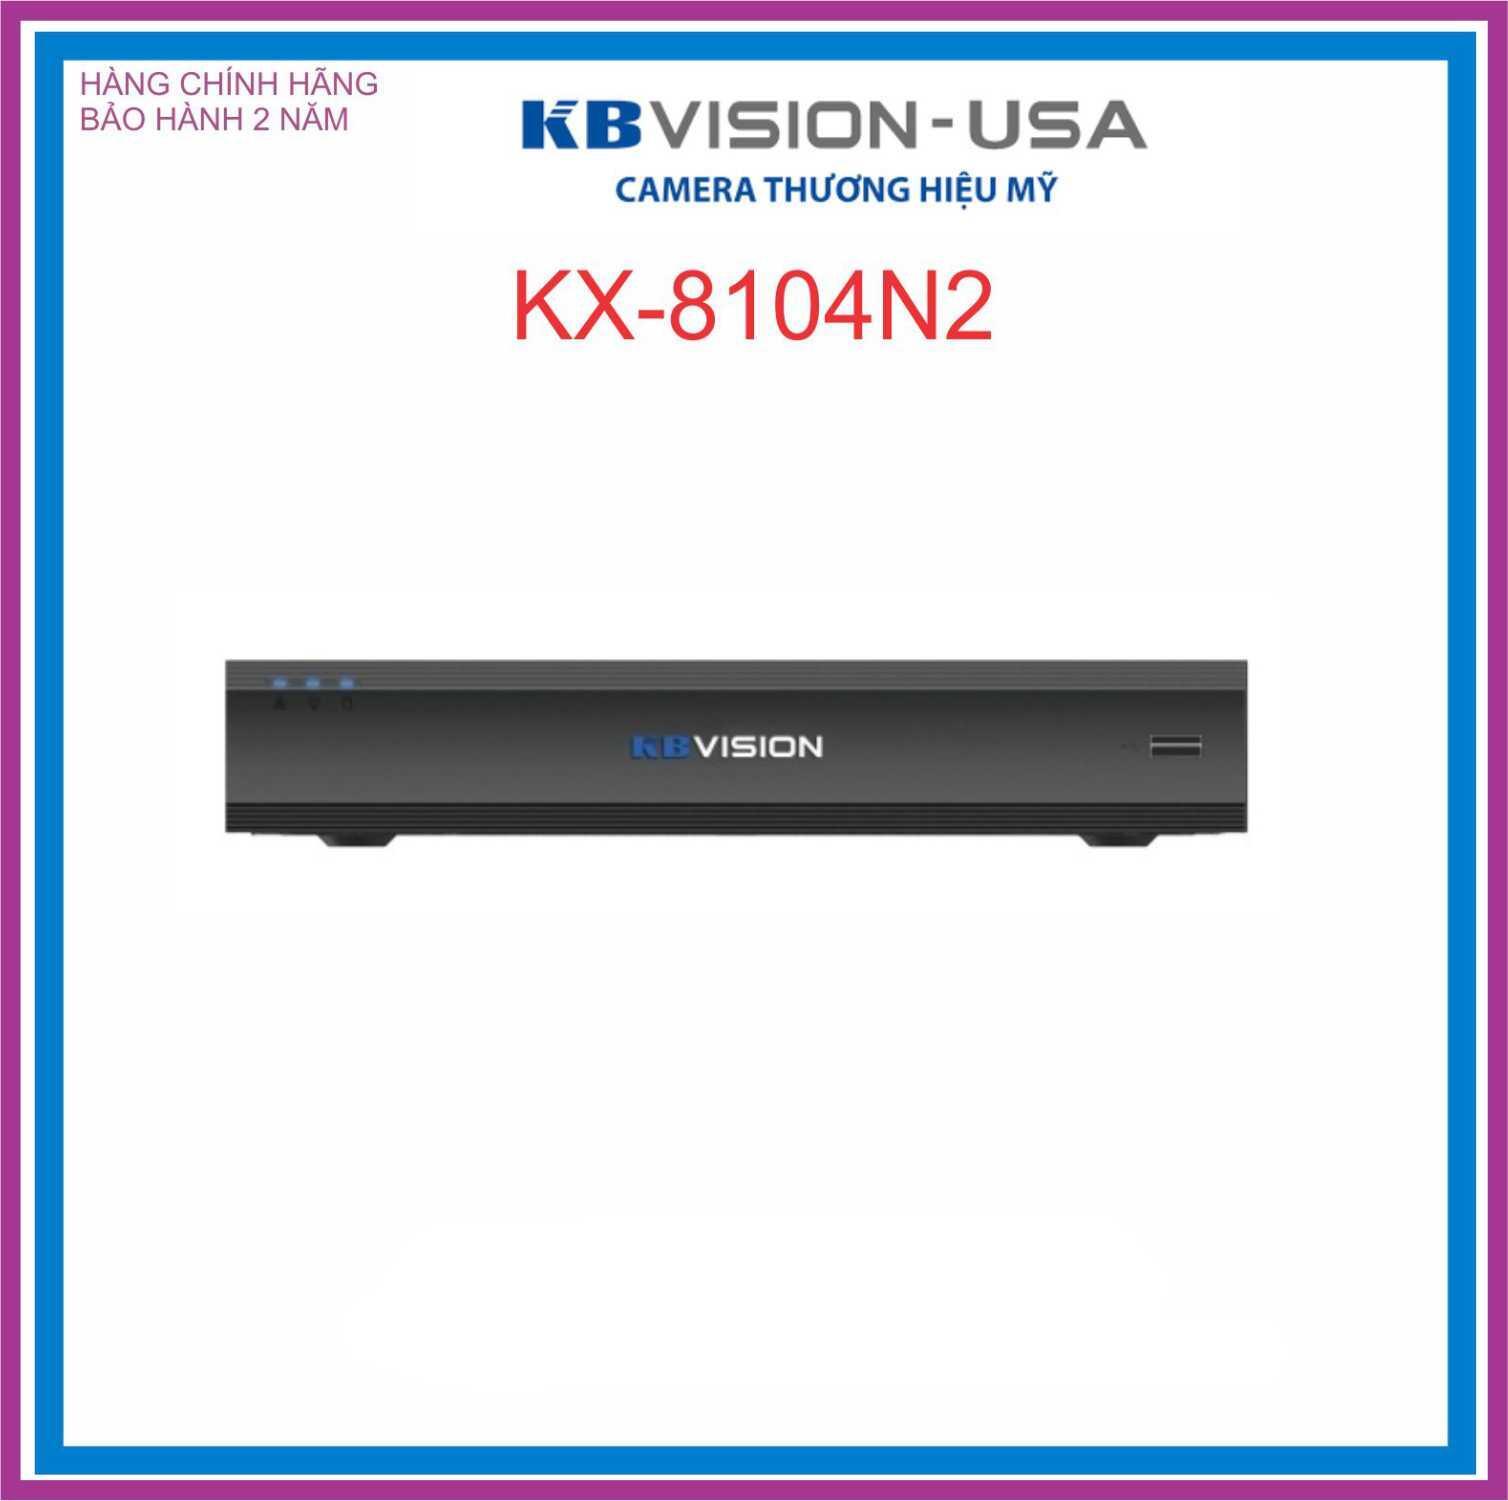 Đầu ghi hình ip 4 kênh kbvision kx-8104n2